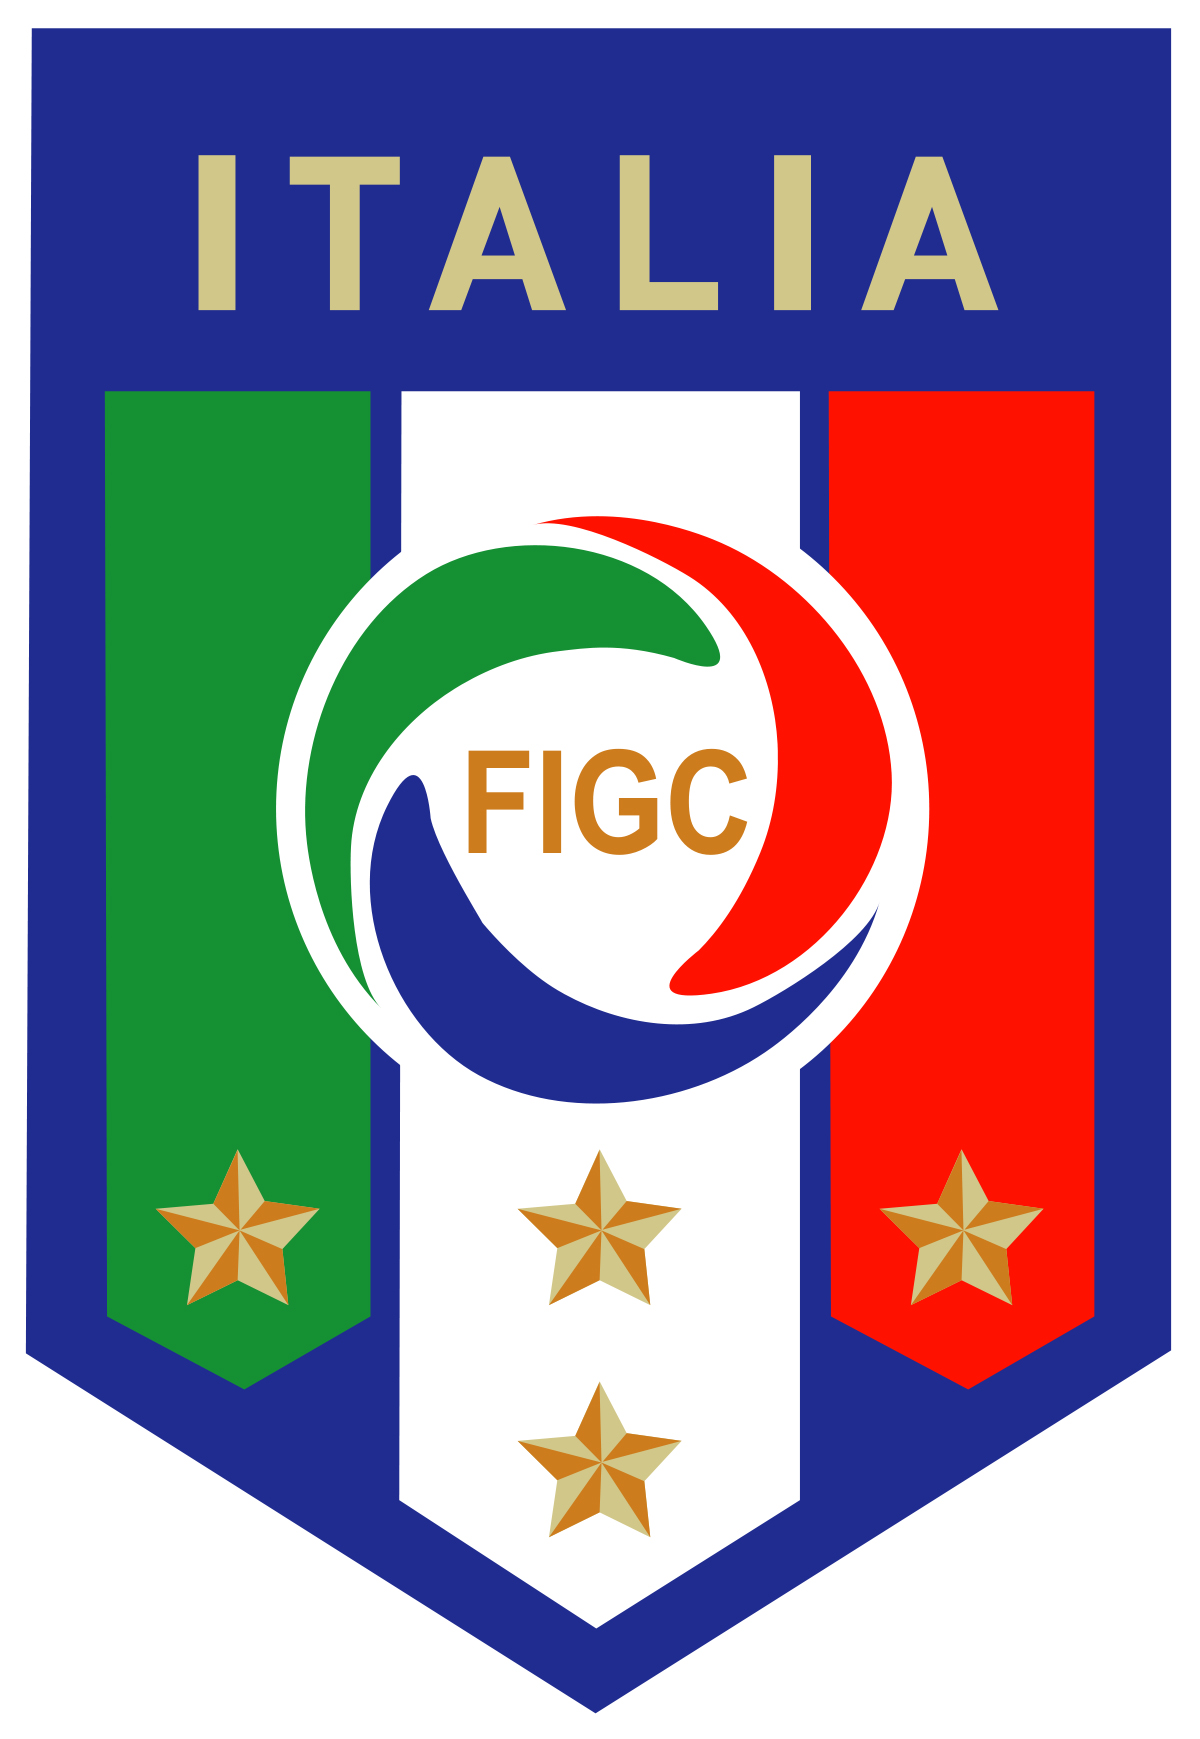 プレスリリース マニフレックスが イタリアサッカー連盟 略称 Figc と オフィシャルパートナー契約を締結 Digital Pr Platform 毎日新聞